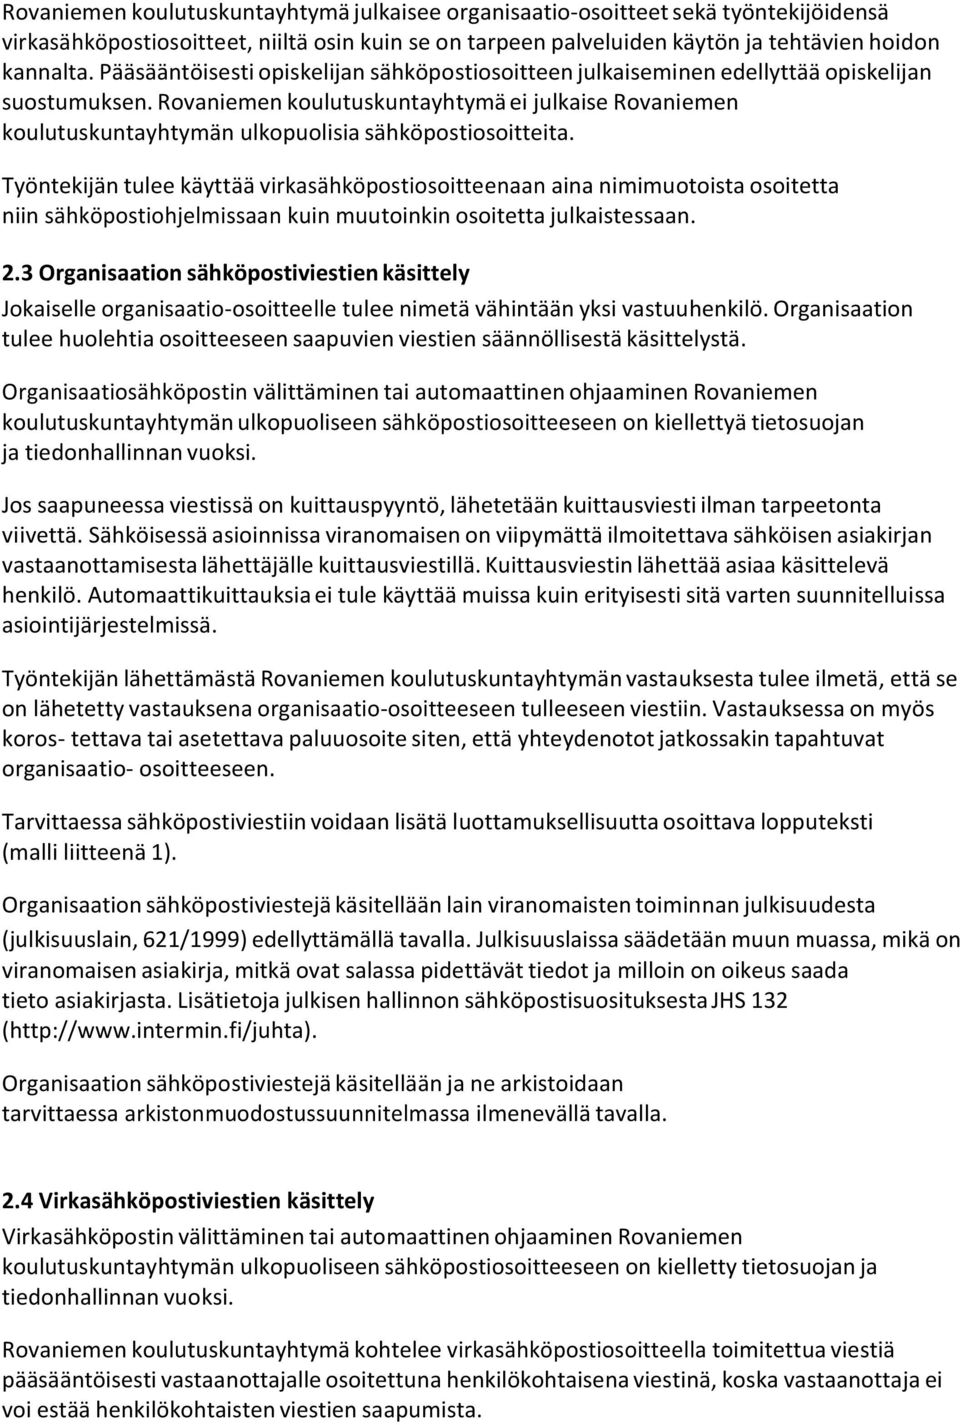 Rovaniemen koulutuskuntayhtymä ei julkaise Rovaniemen koulutuskuntayhtymän ulkopuolisia sähköpostiosoitteita.